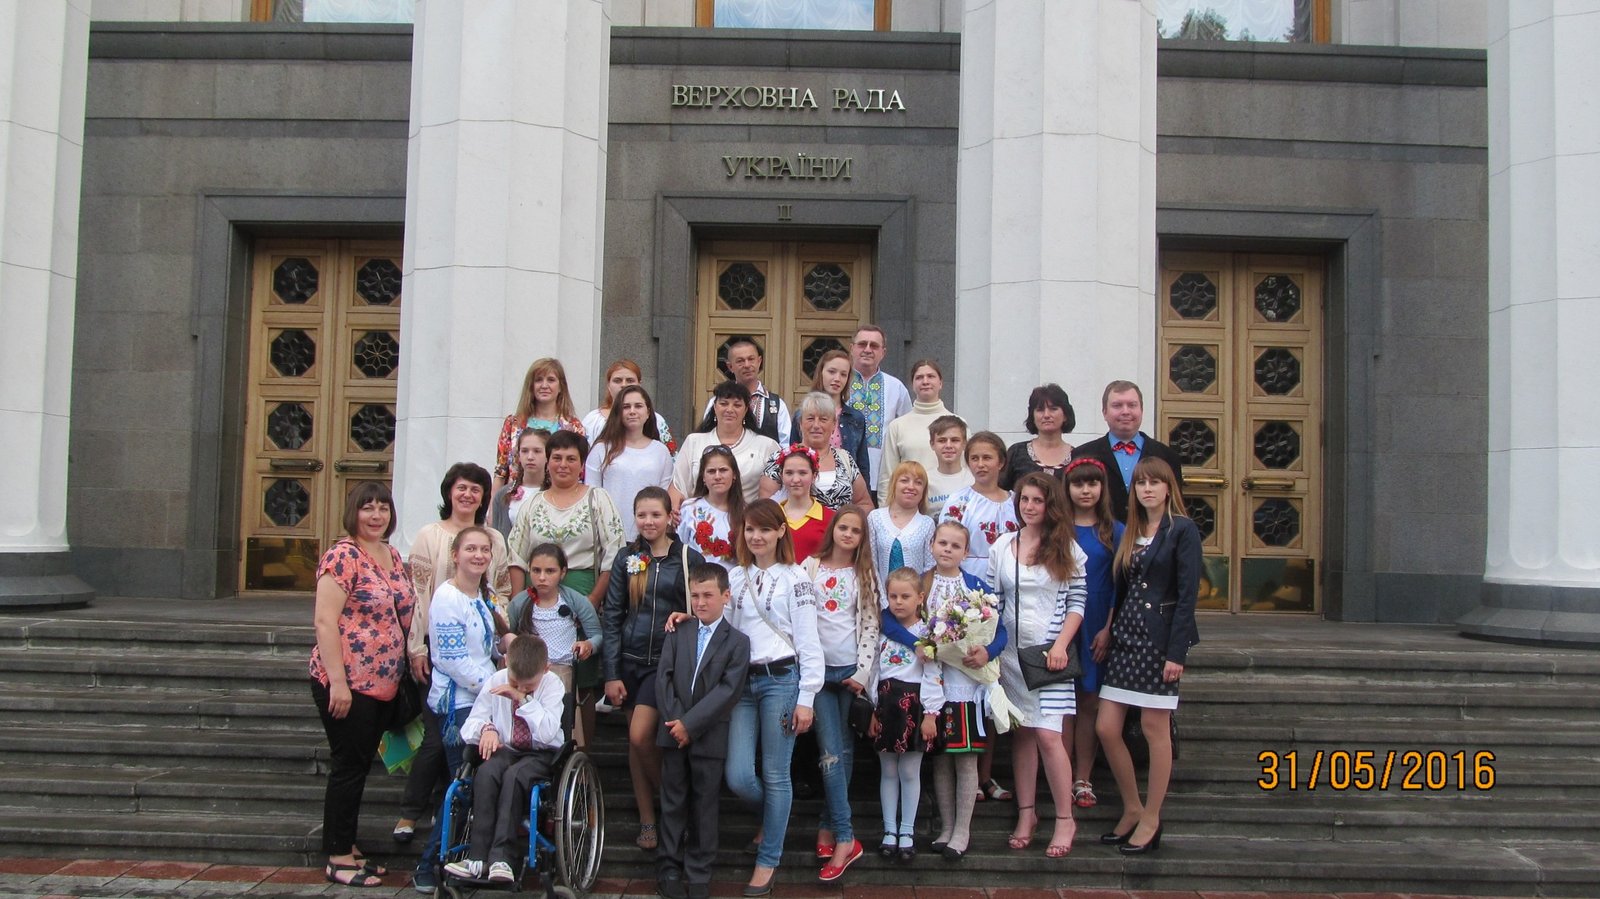 У будівлі Верховної Ради України діти та молодь з особливими потребами з усіх регіонів України продемонстрували свої творчі таланти – вироби декоративно-прикладного мистецтва